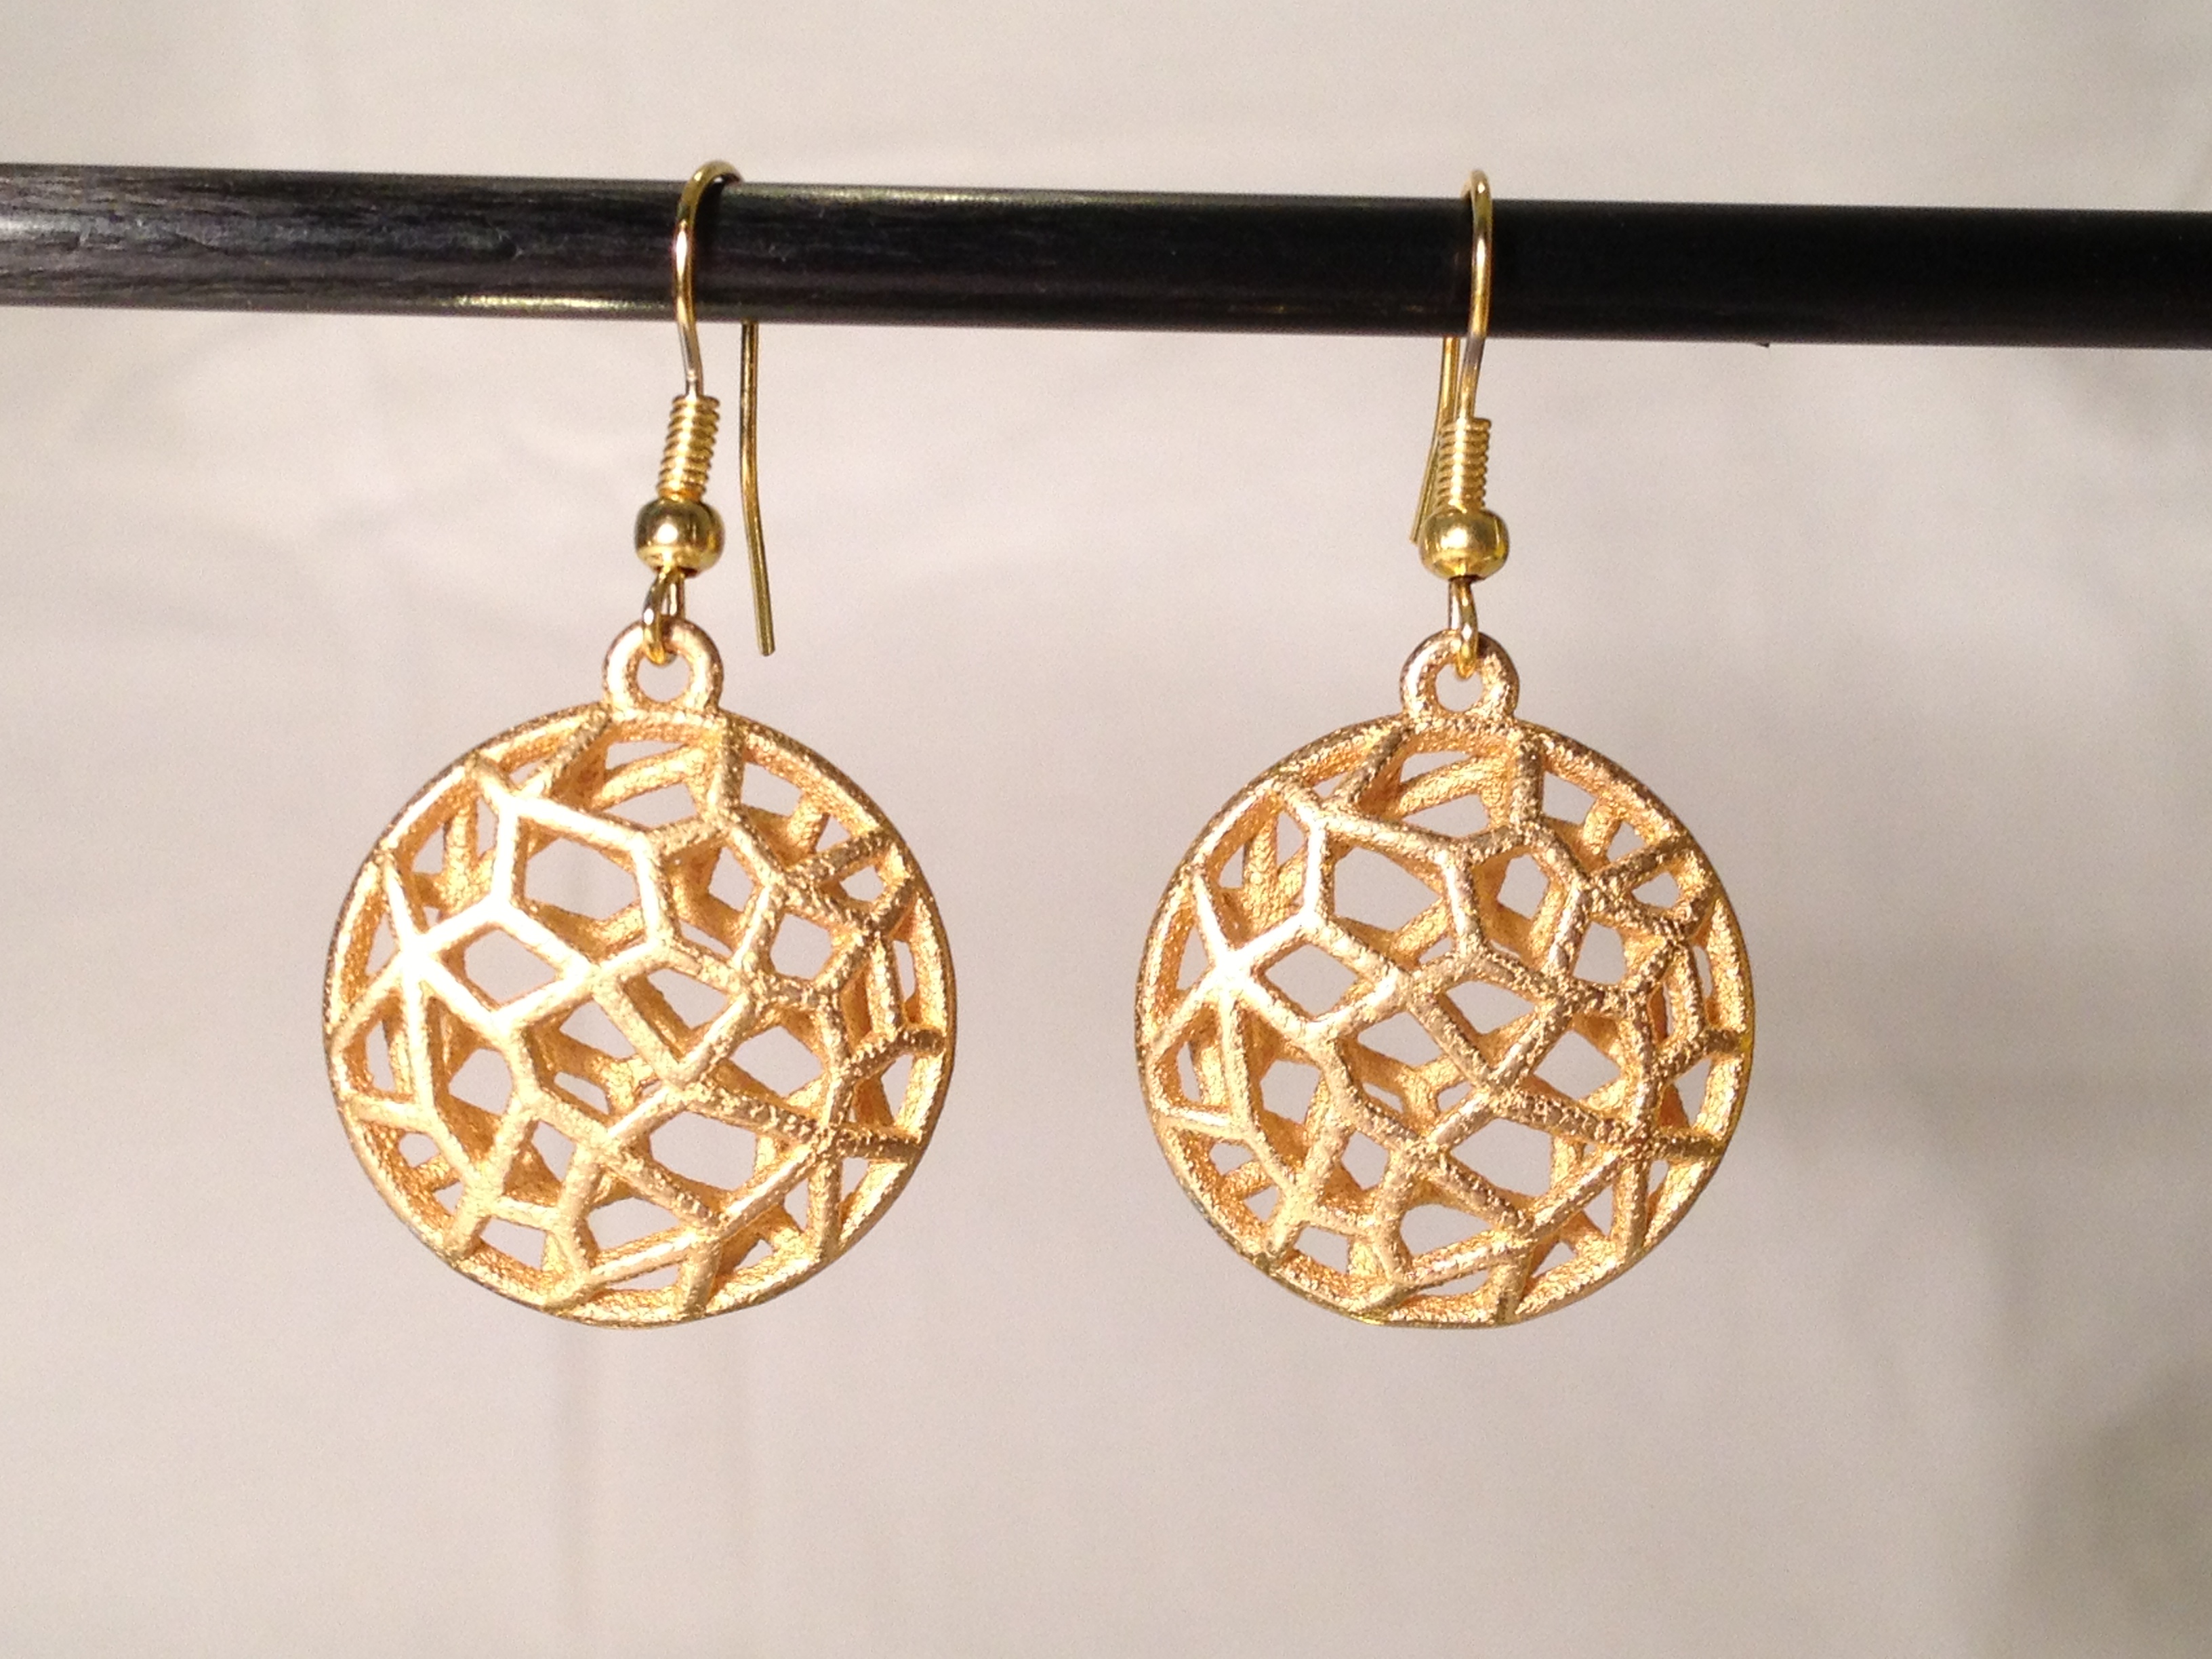 bio cell earrings #1 - gold 1.JPG